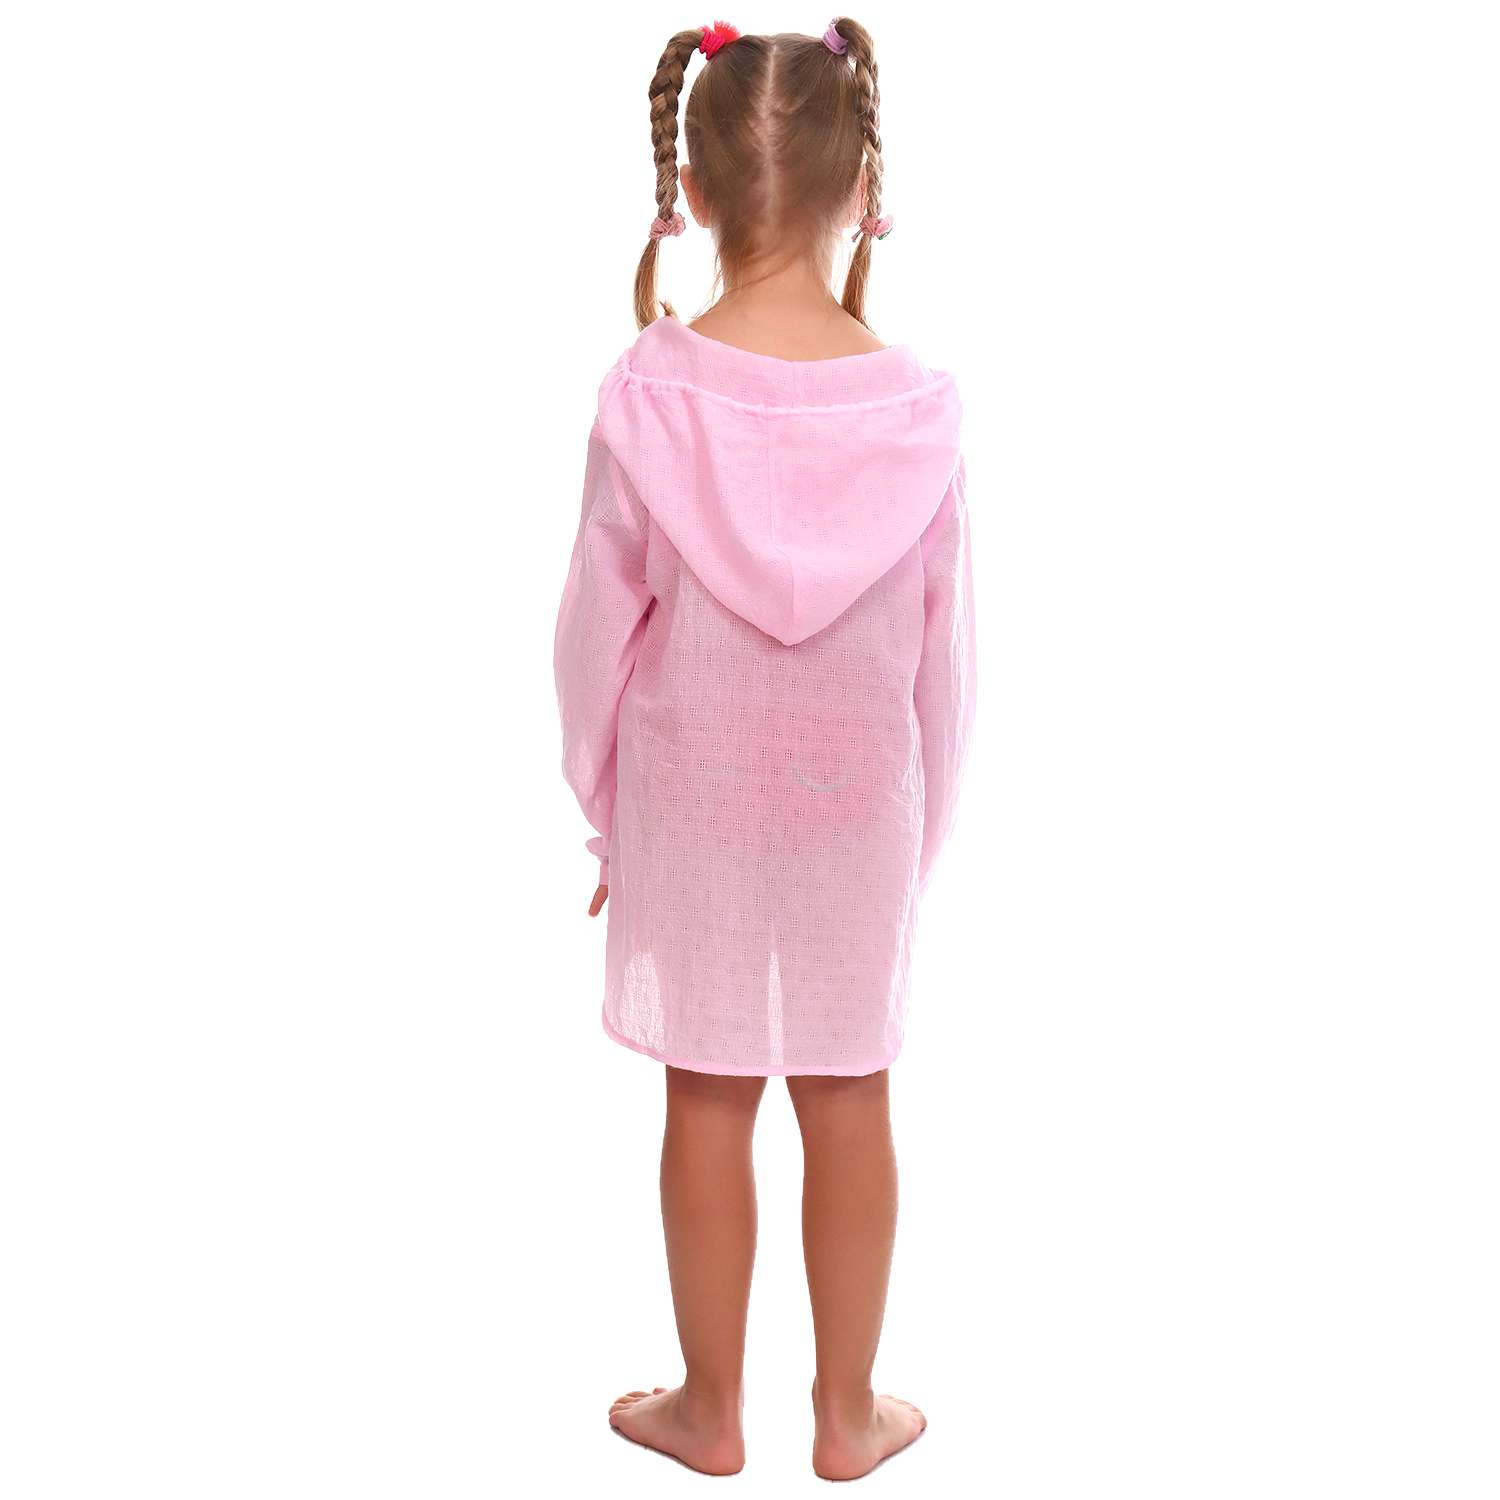 Туника Детская Одежда 8100Мрл/розовый3 - фото 6